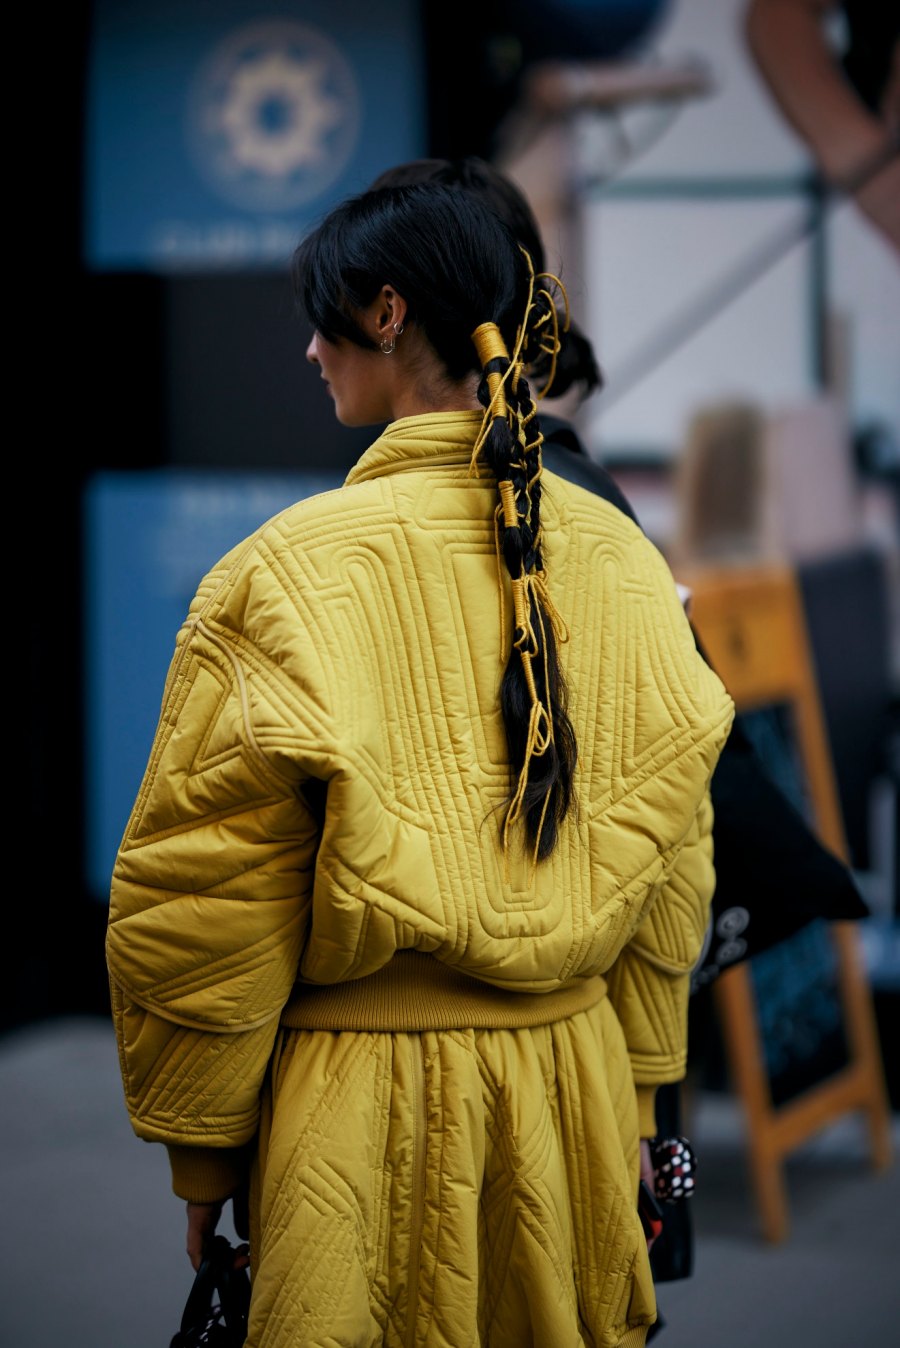 6 iconic hairstyles που ξεχωρίσαμε στις street style εμφανίσεις στην εβδομάδα μόδας της νέας υόρκης